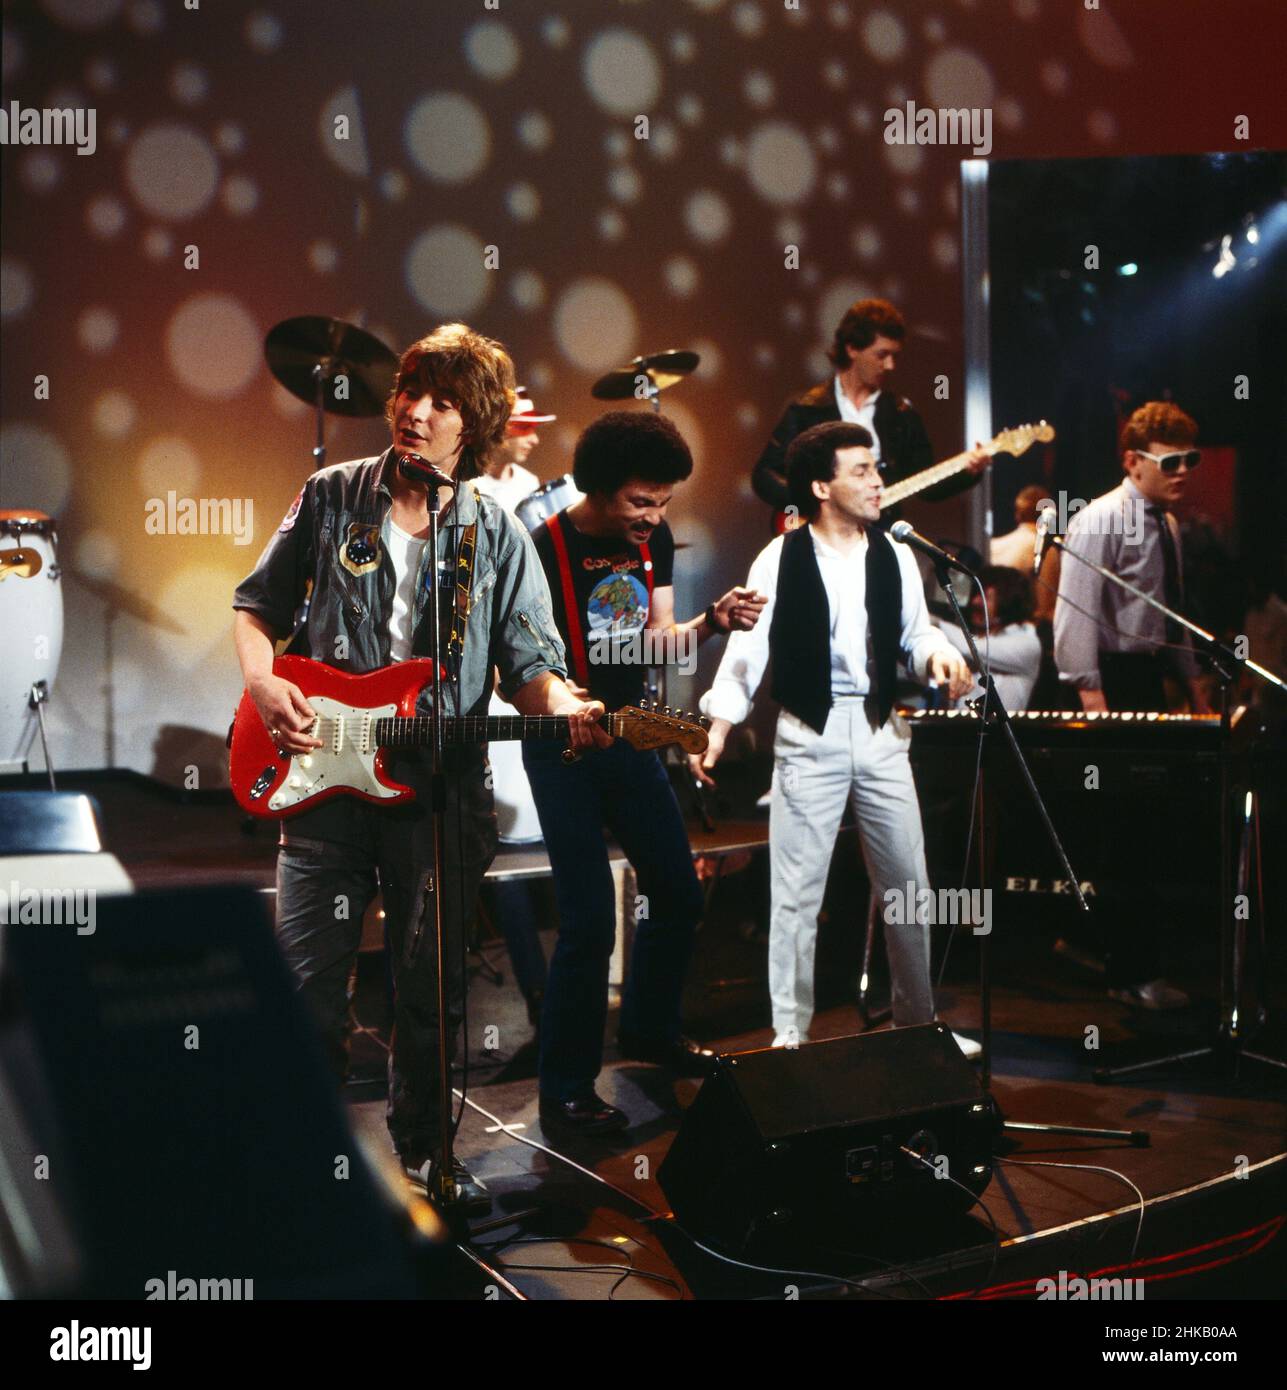 Chris Rea, britischer Sänger, Komponist und Gitarrist, bei einem Auftritt im Fernsehen, Deutschland 1980. Stock Photo